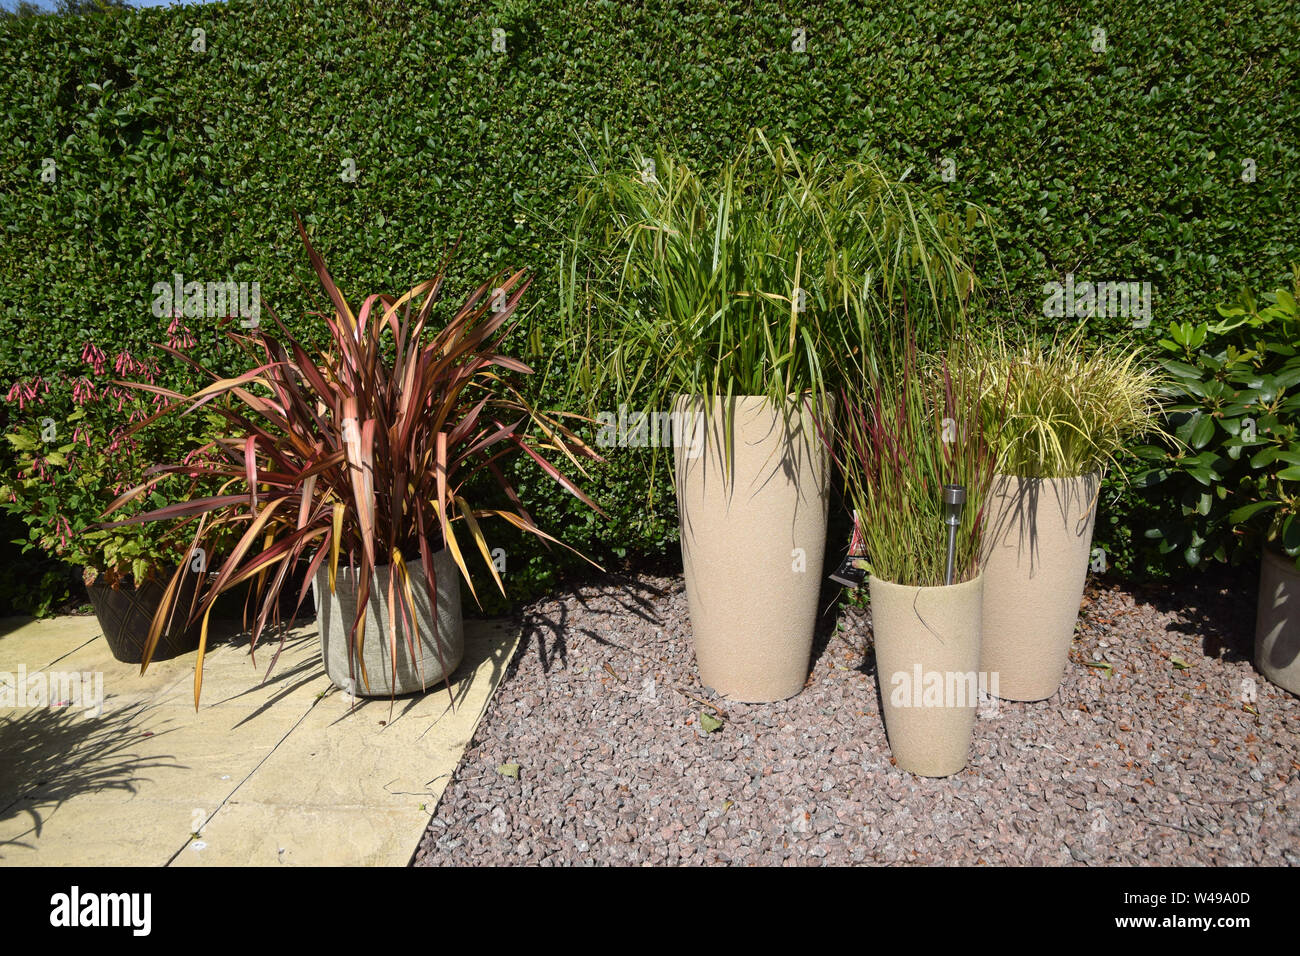 https://c8.alamy.com/comp/W49A0D/ornamental-grasses-in-pots-W49A0D.jpg